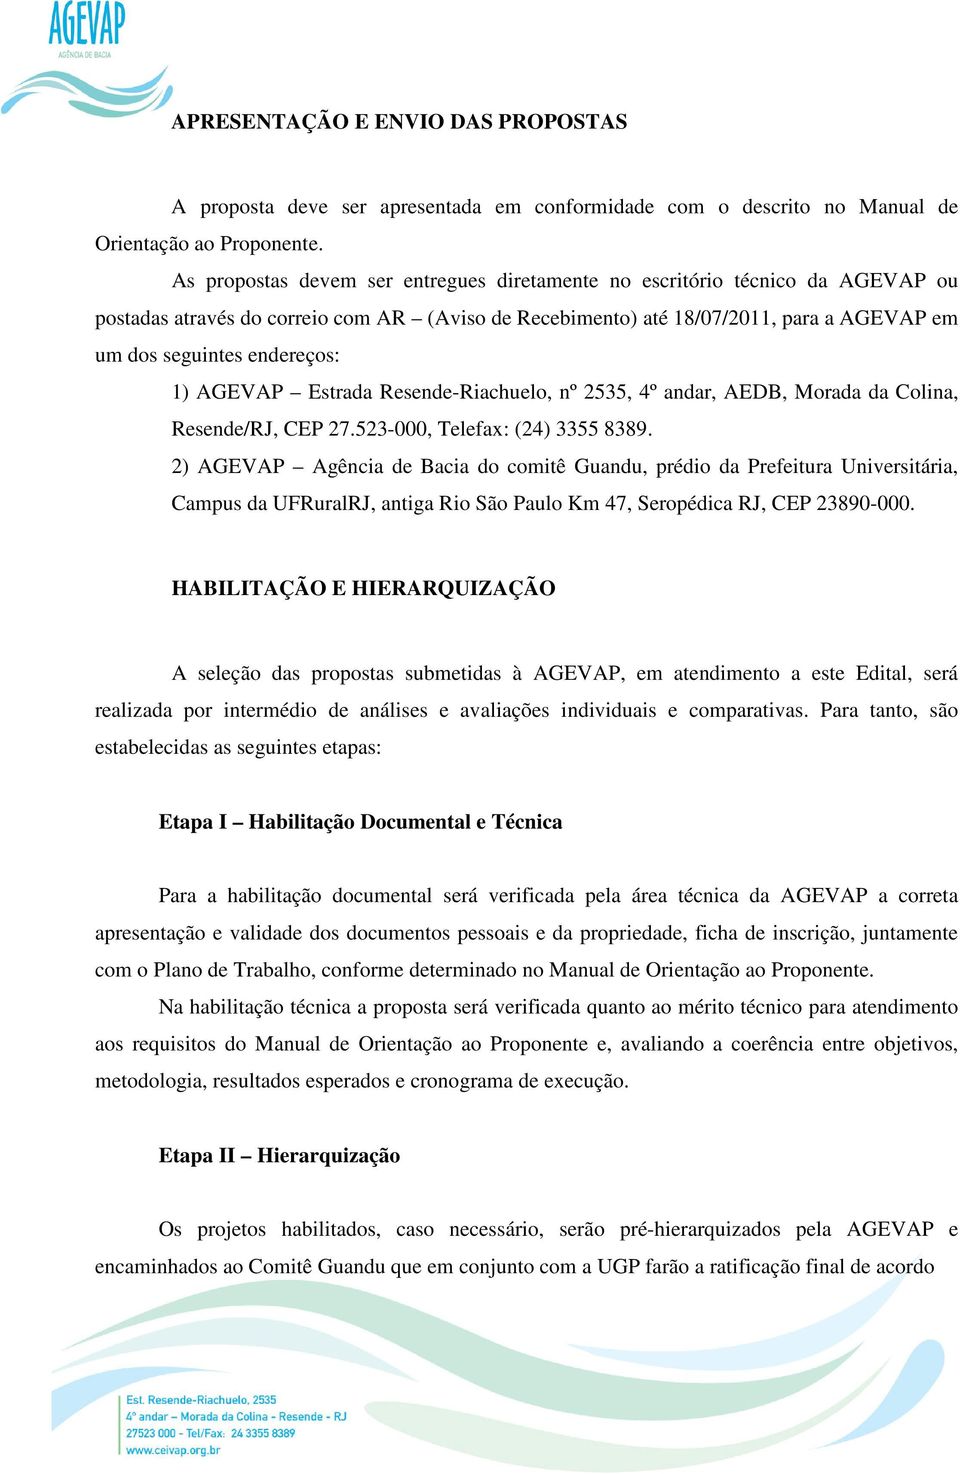 1) AGEVAP Estrada Resende-Riachuelo, nº 2535, 4º andar, AEDB, Morada da Colina, Resende/RJ, CEP 27.523-000, Telefax: (24) 3355 8389.